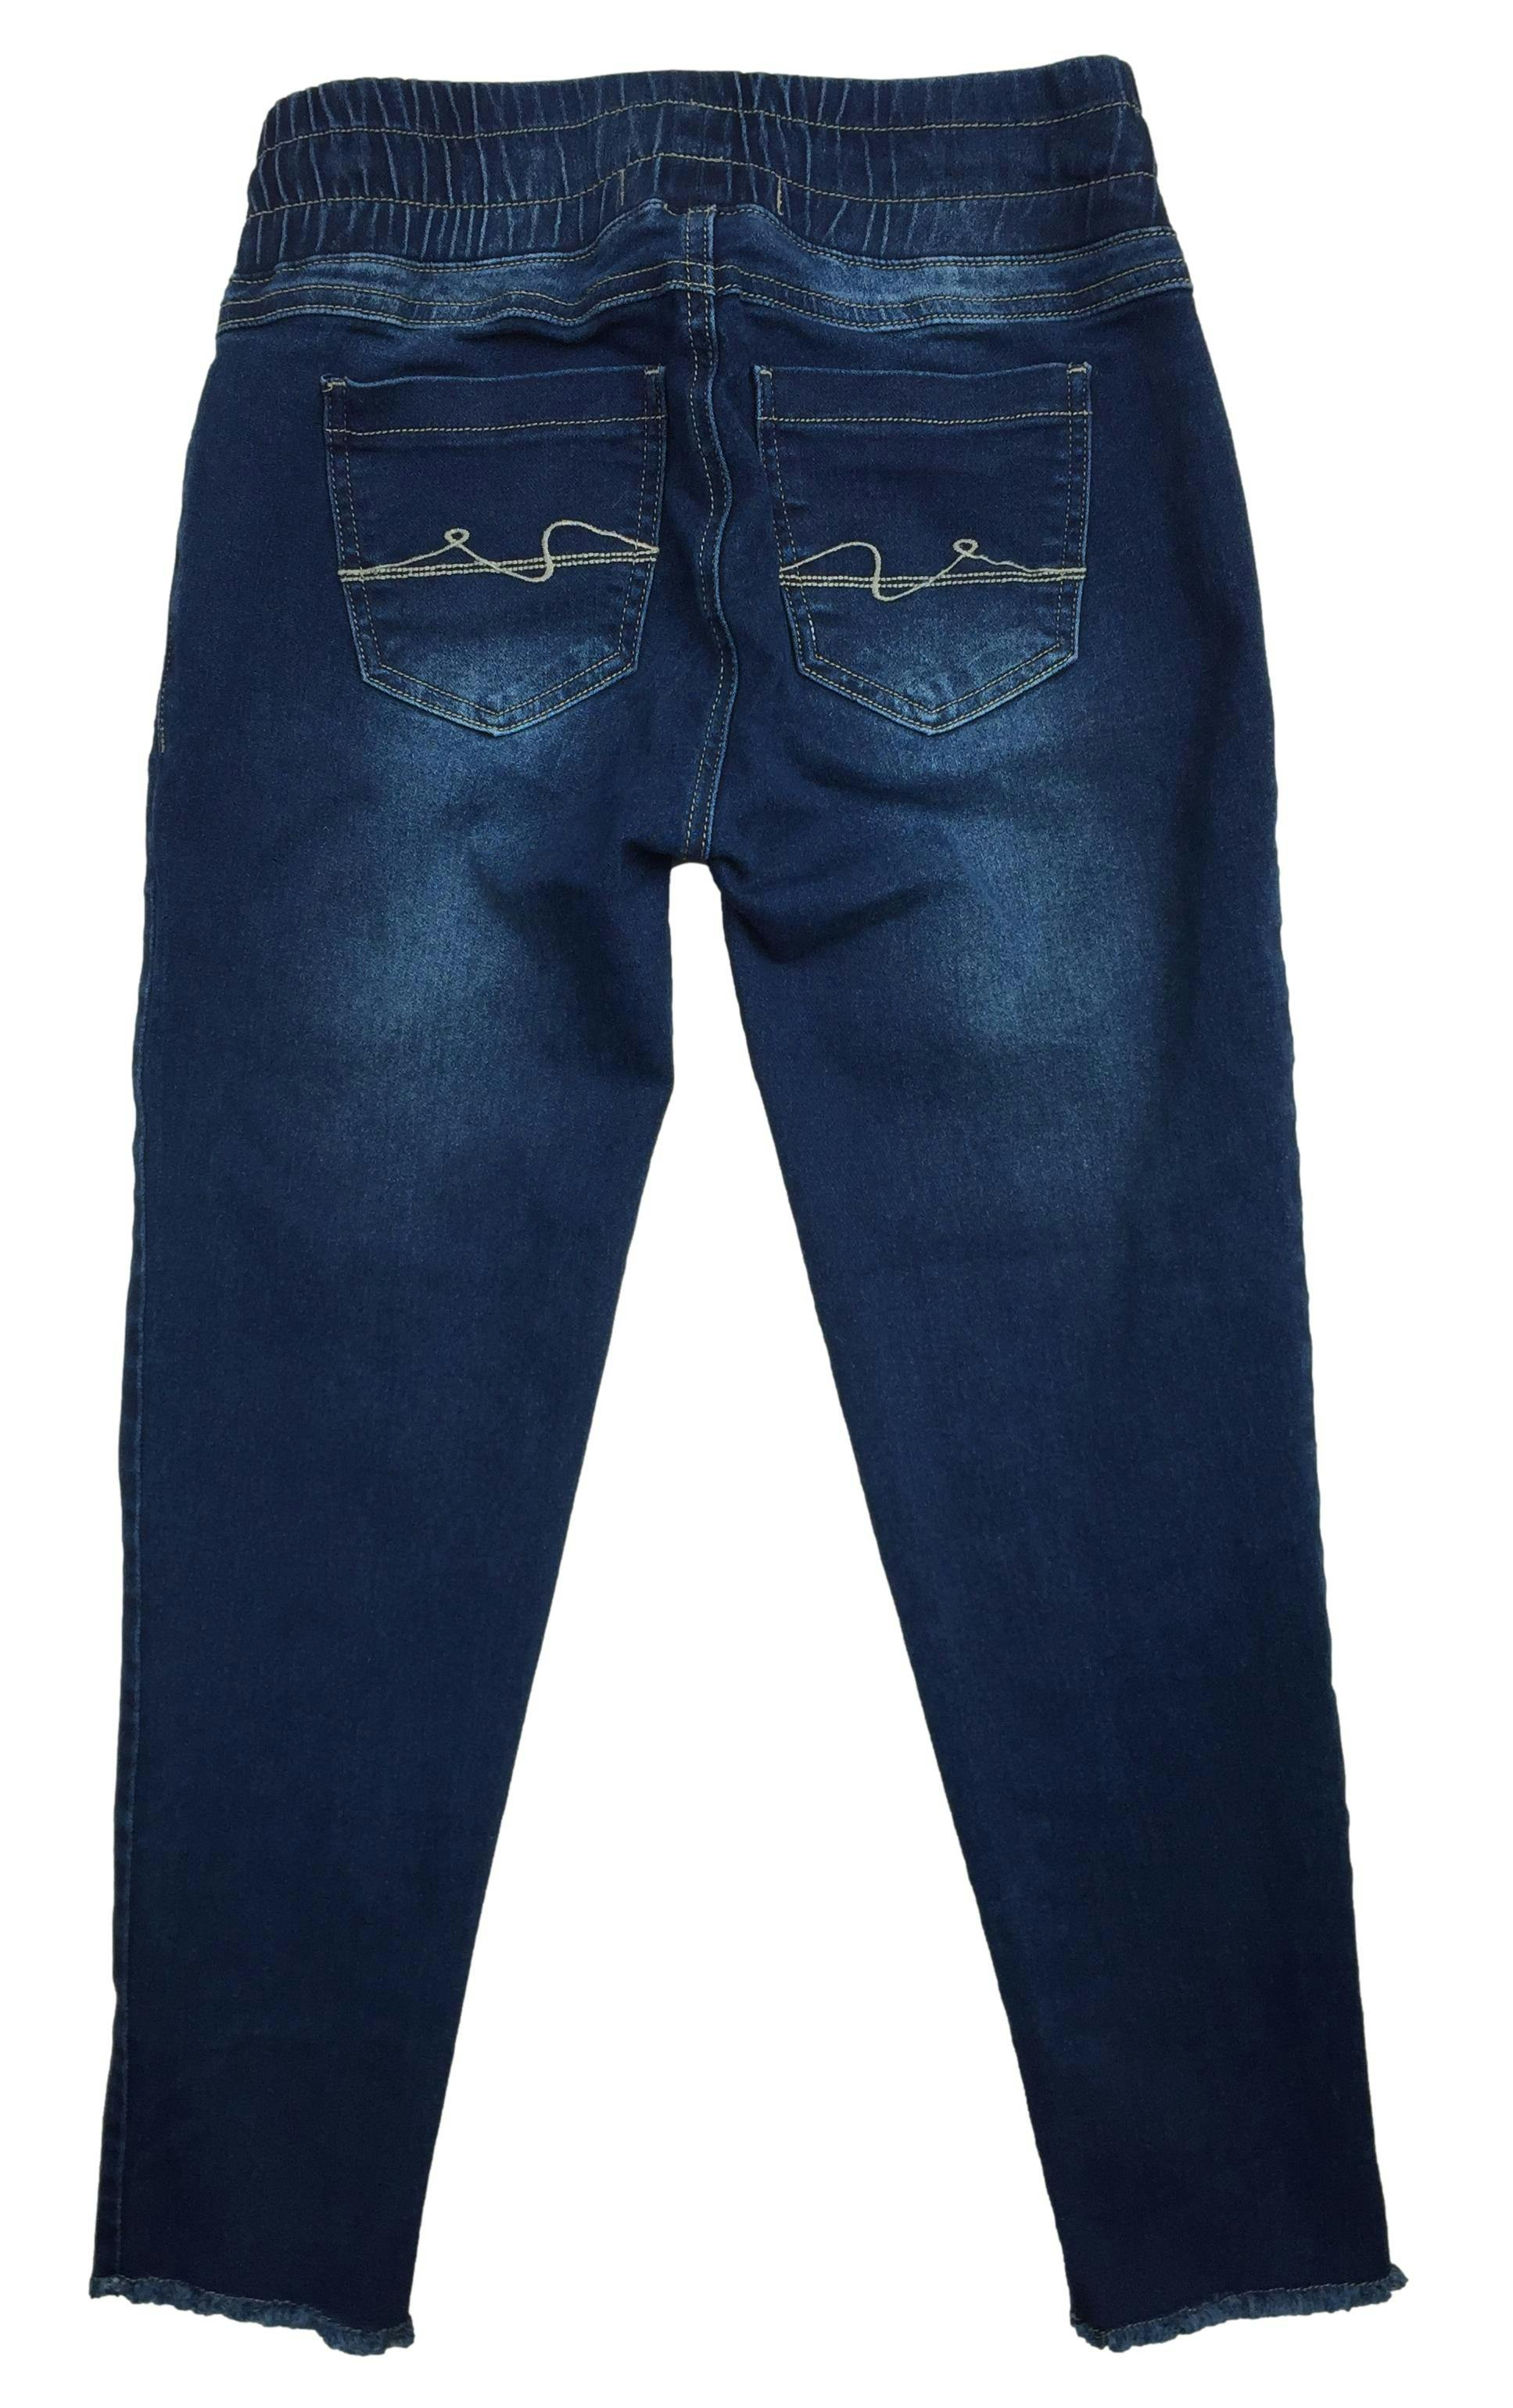 Pantalón jean azul con cintura elasticada y cintos para ajustar. Cintura 70cm sin estirar, Largo 84cm.